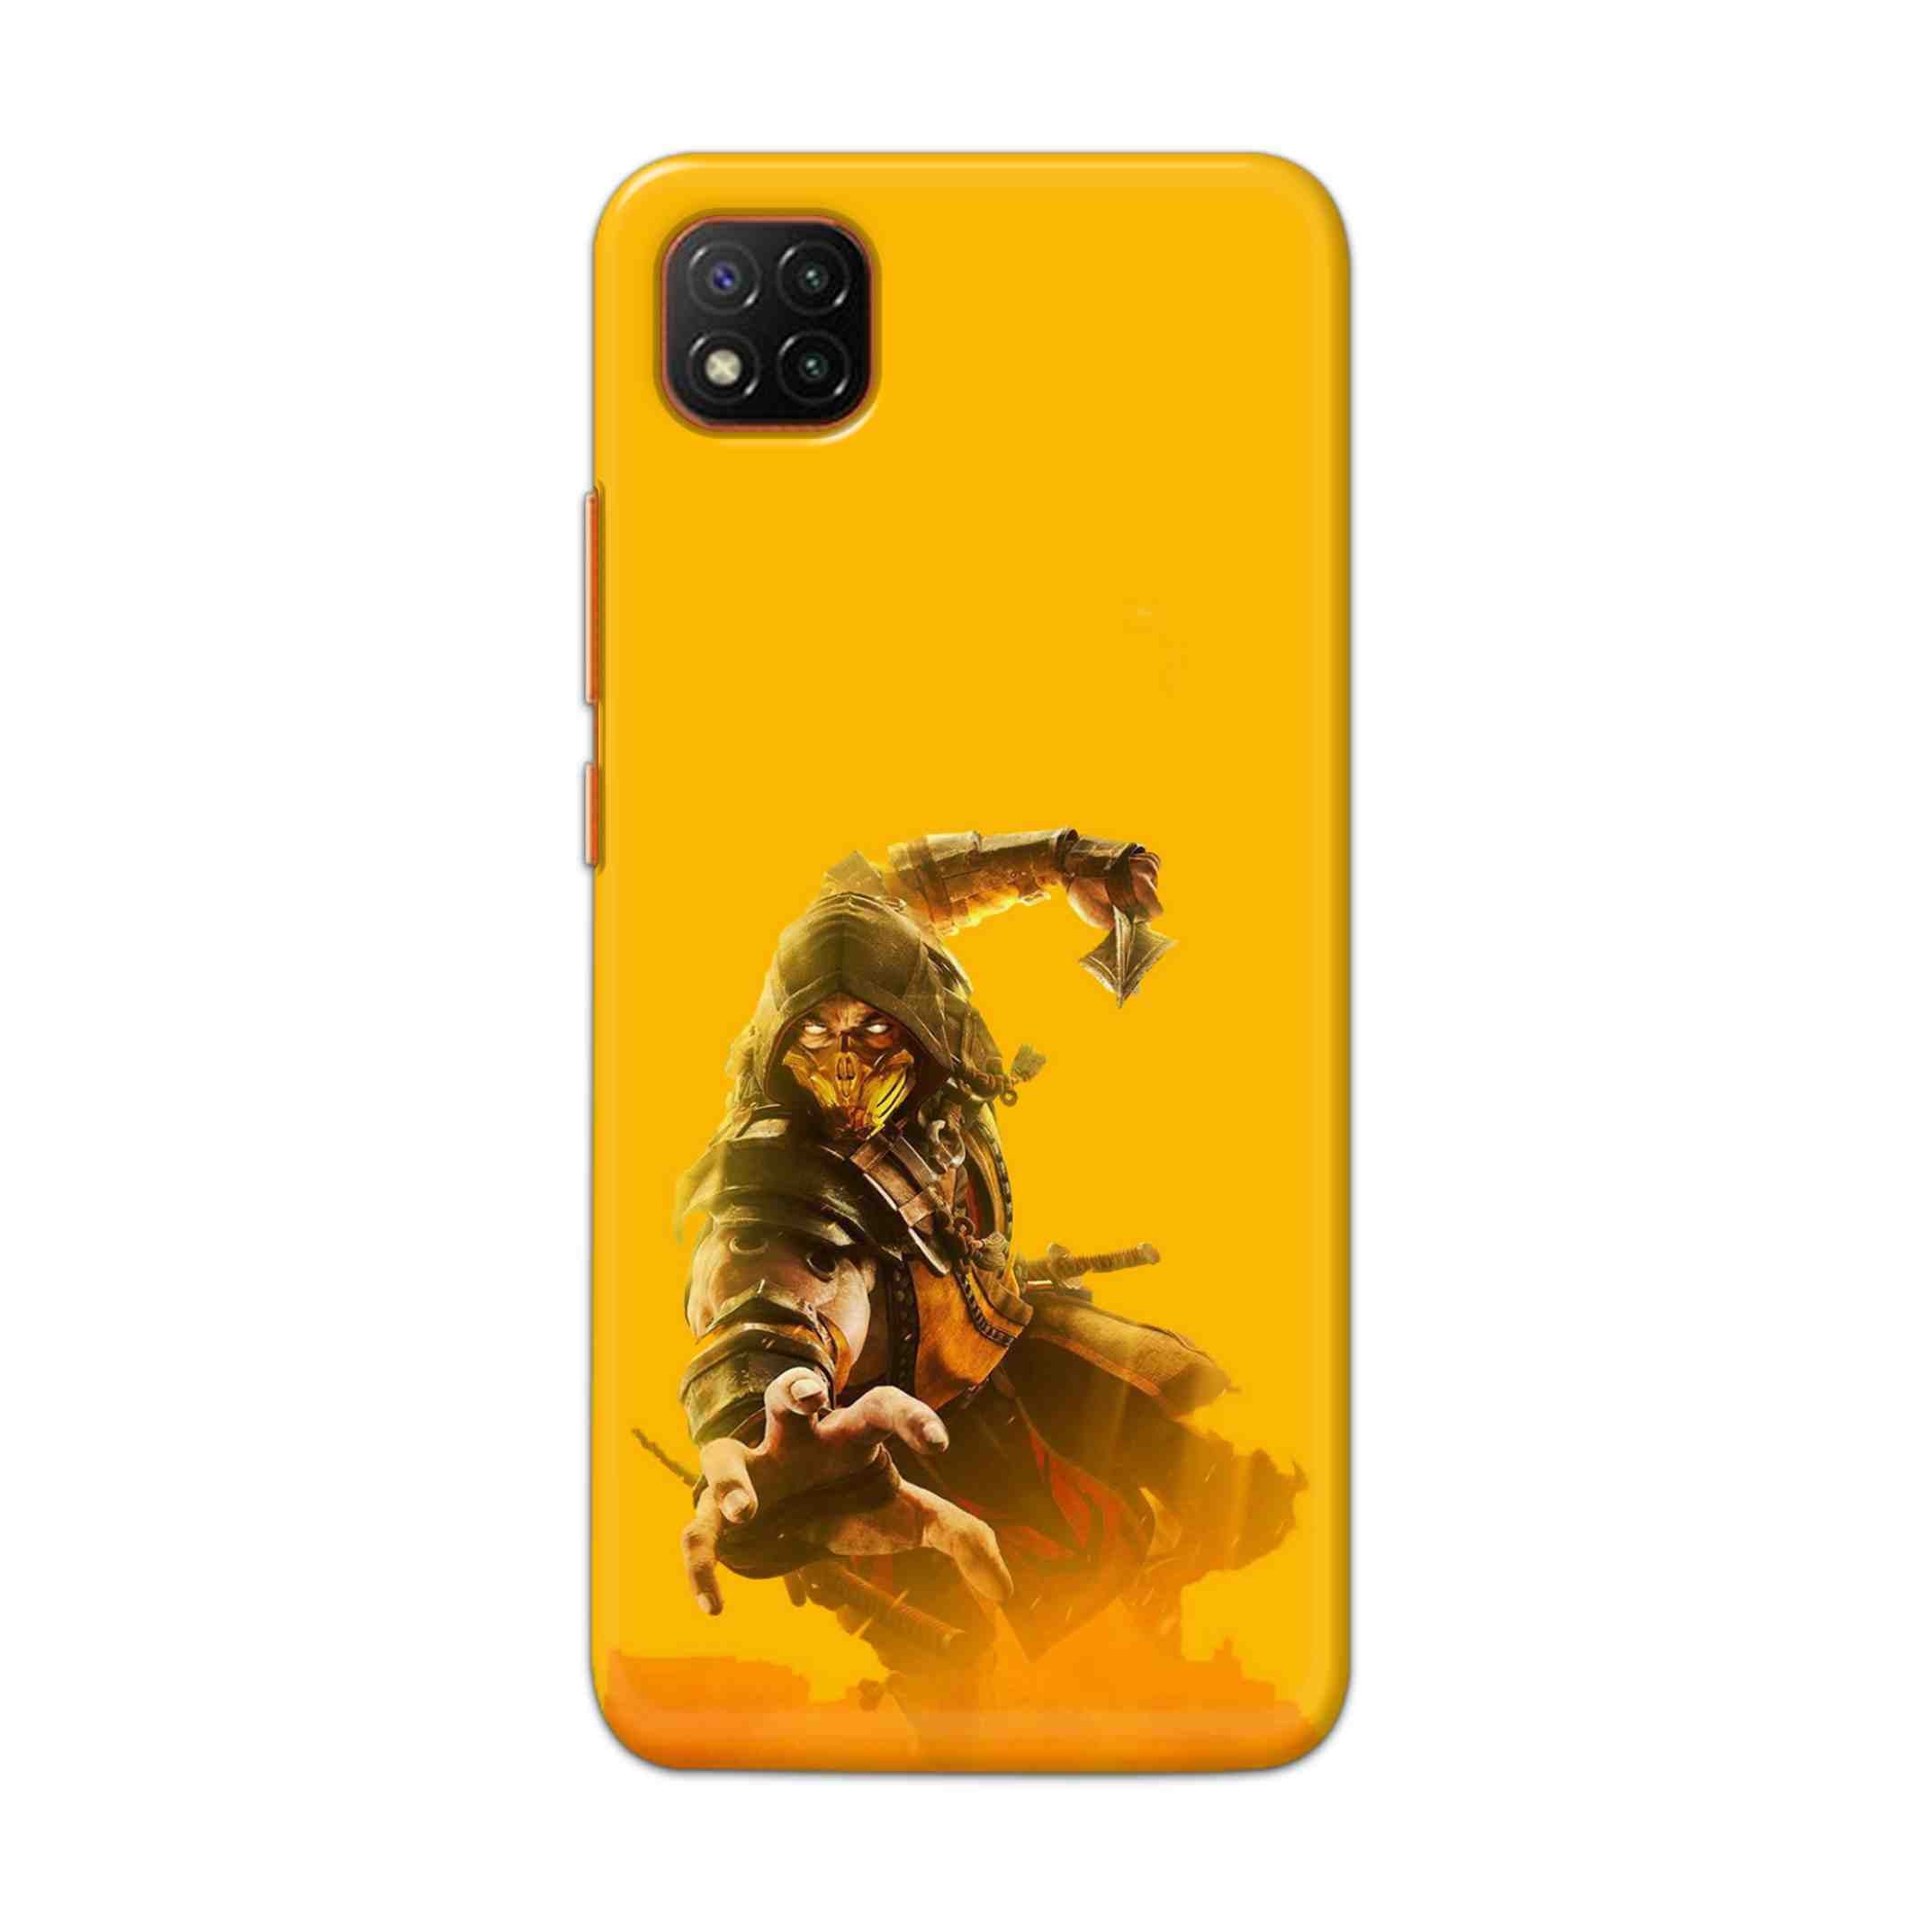 Buy Mortal Kombat Hard Back Mobile Phone Case Cover For Mi 9C Online